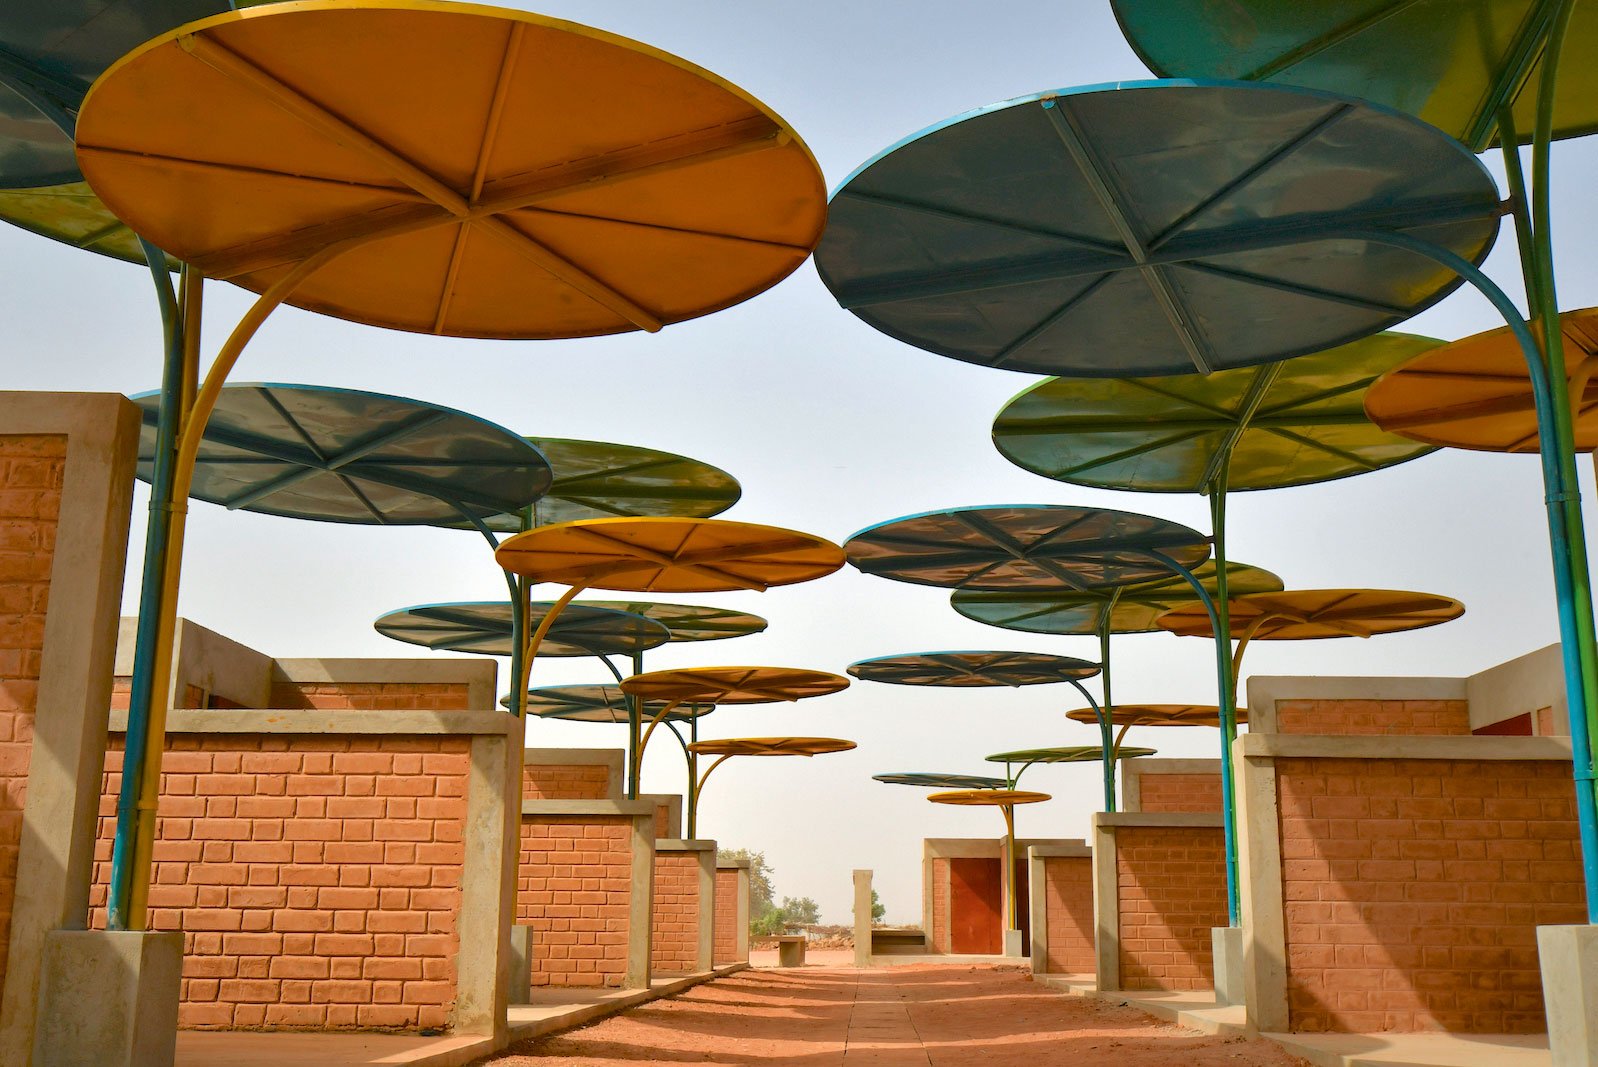 Kreativer Sonnenschutz: Für einen Markt in Niger verwendete die Architektin Mariam Kamara bunte Platten aus recyceltem Metall zur Kühlung. ateliermasomi.com